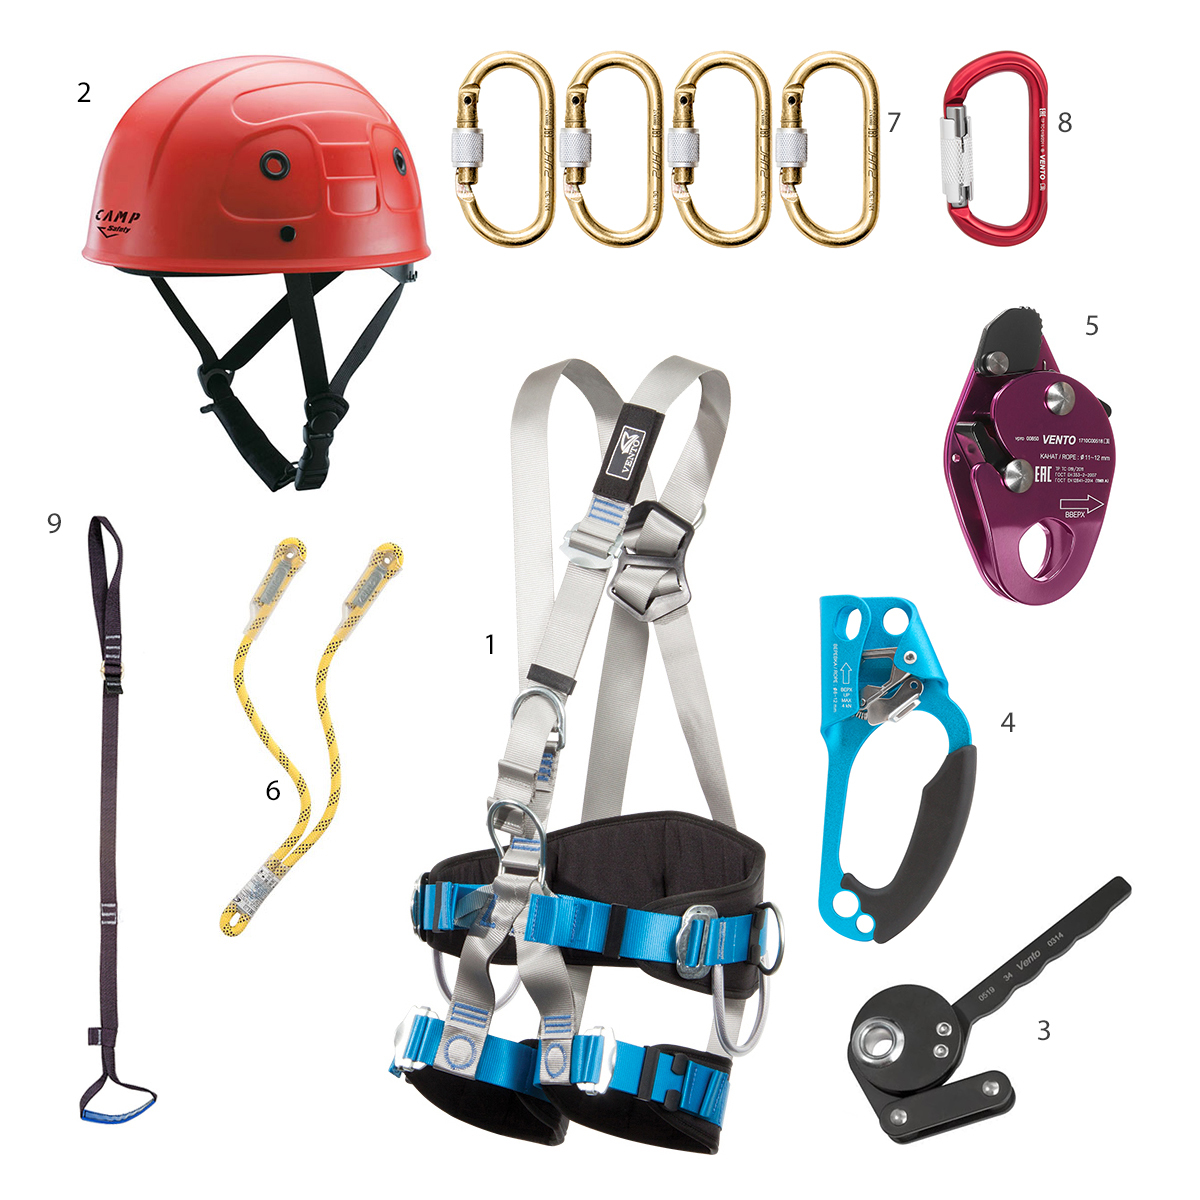 Спусковые и страховочные устройства для альпинизма